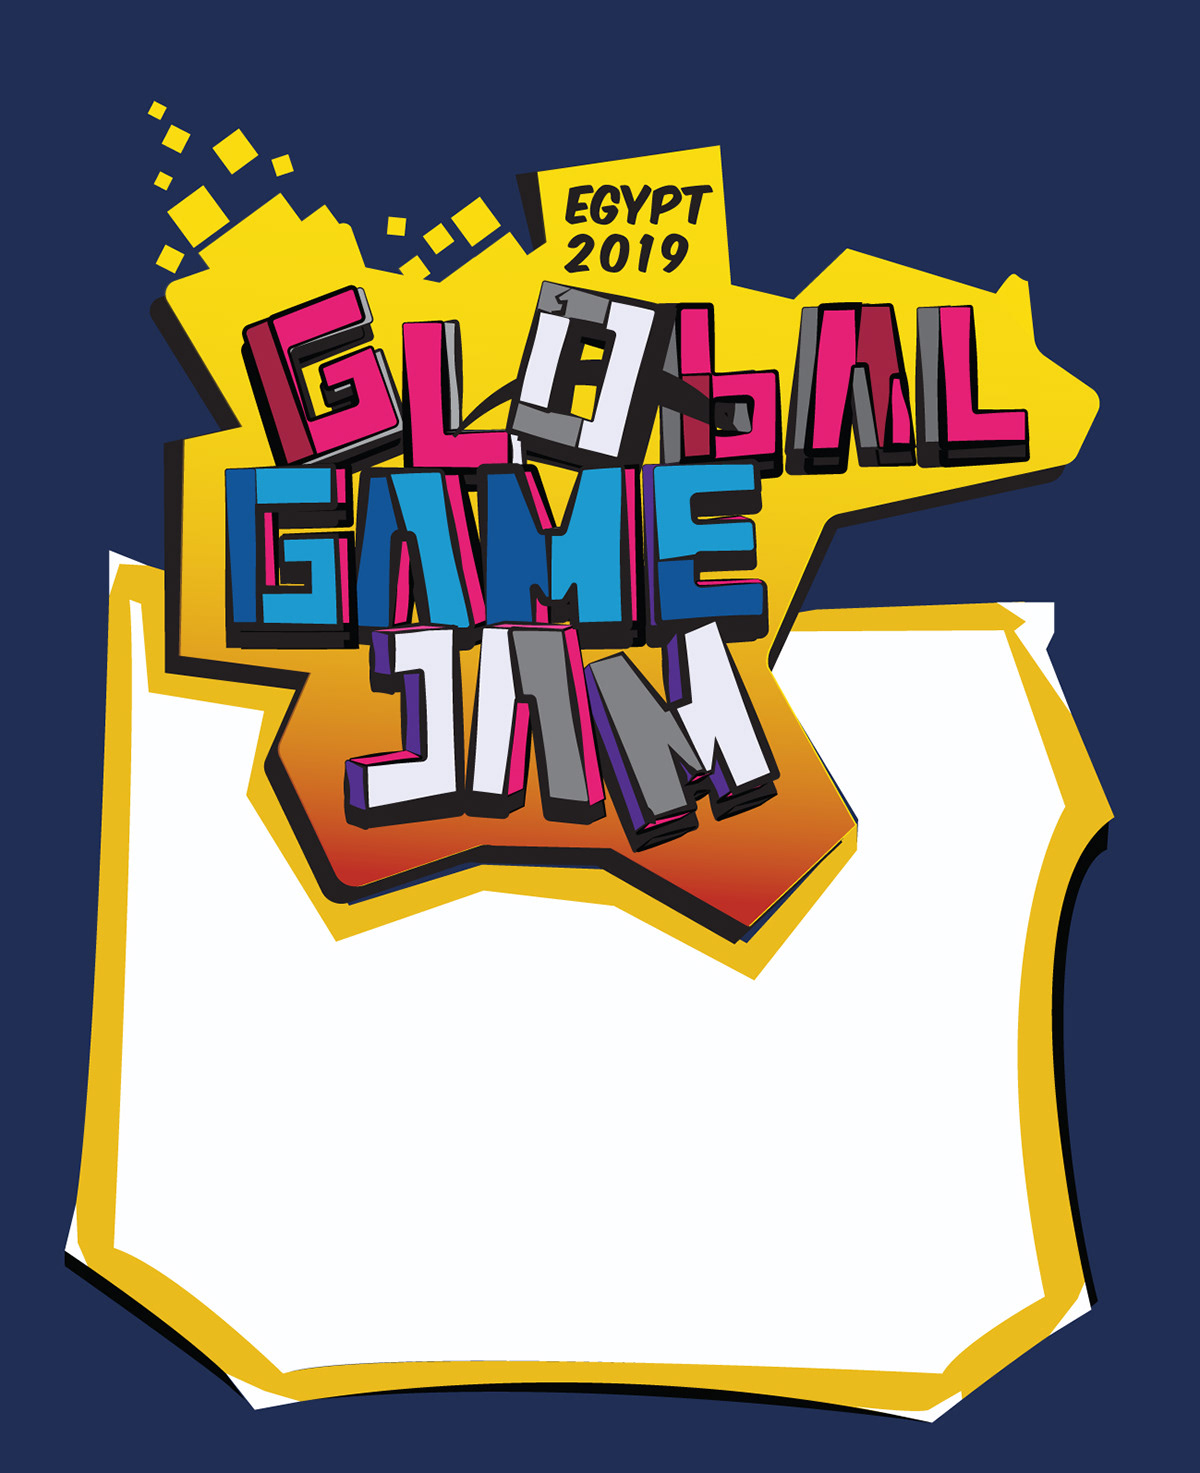 global game jam ggj19 GGJ egypt poster banner ILLUSTRATION  unity vector graphic design 